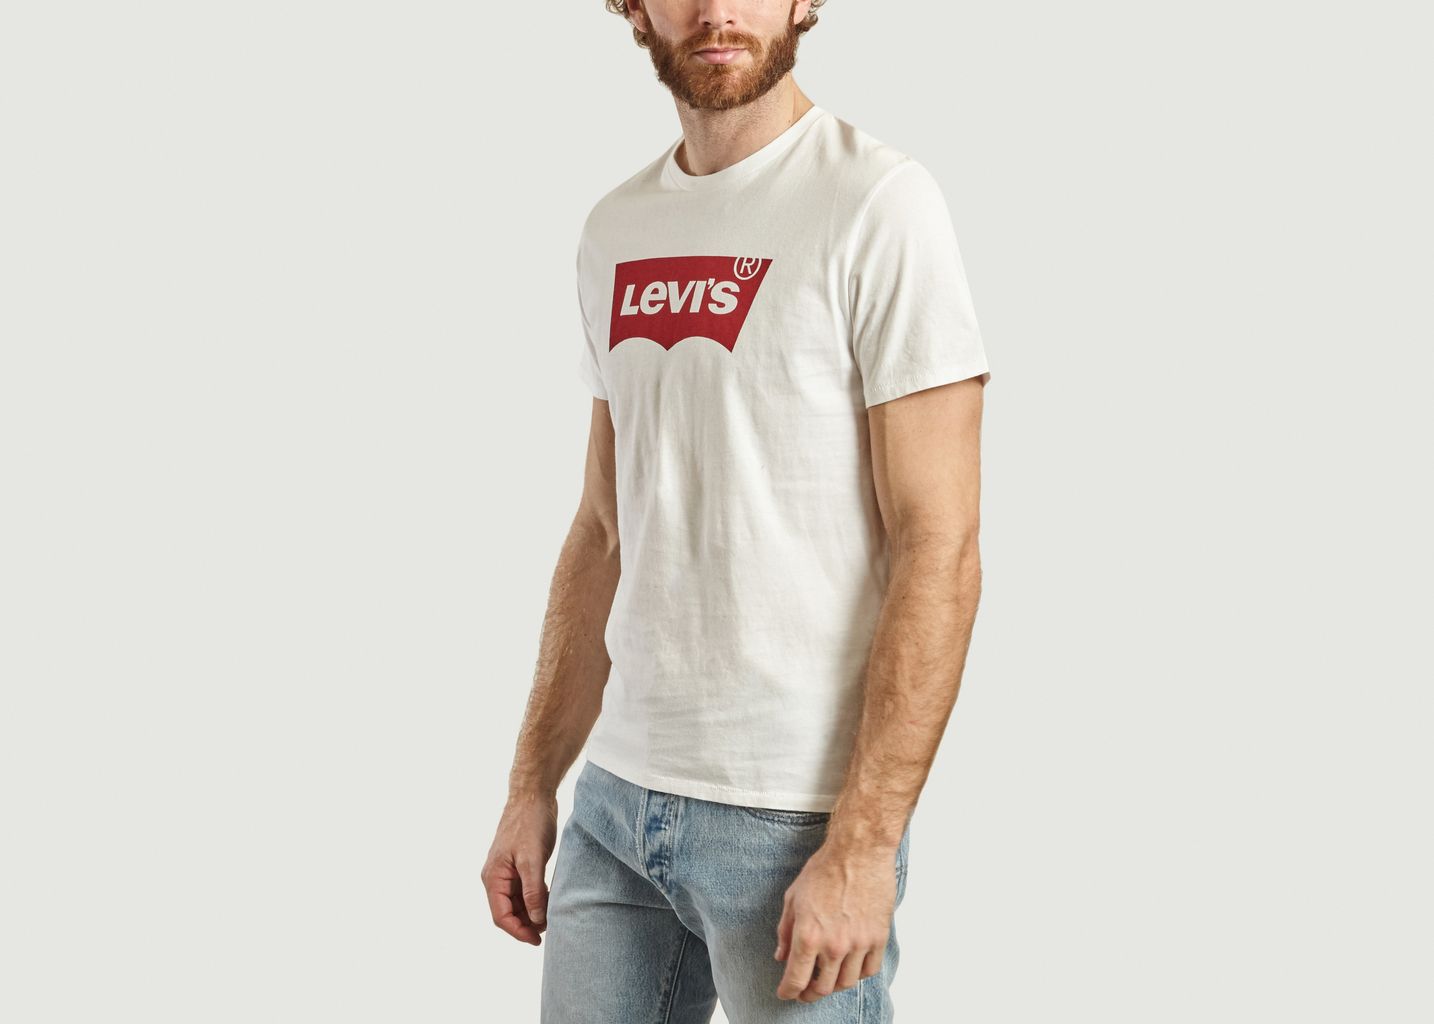 LEVI'S BLANC T/Shirt avec logo, 22491-0039 taille L neuf avec étiquettes